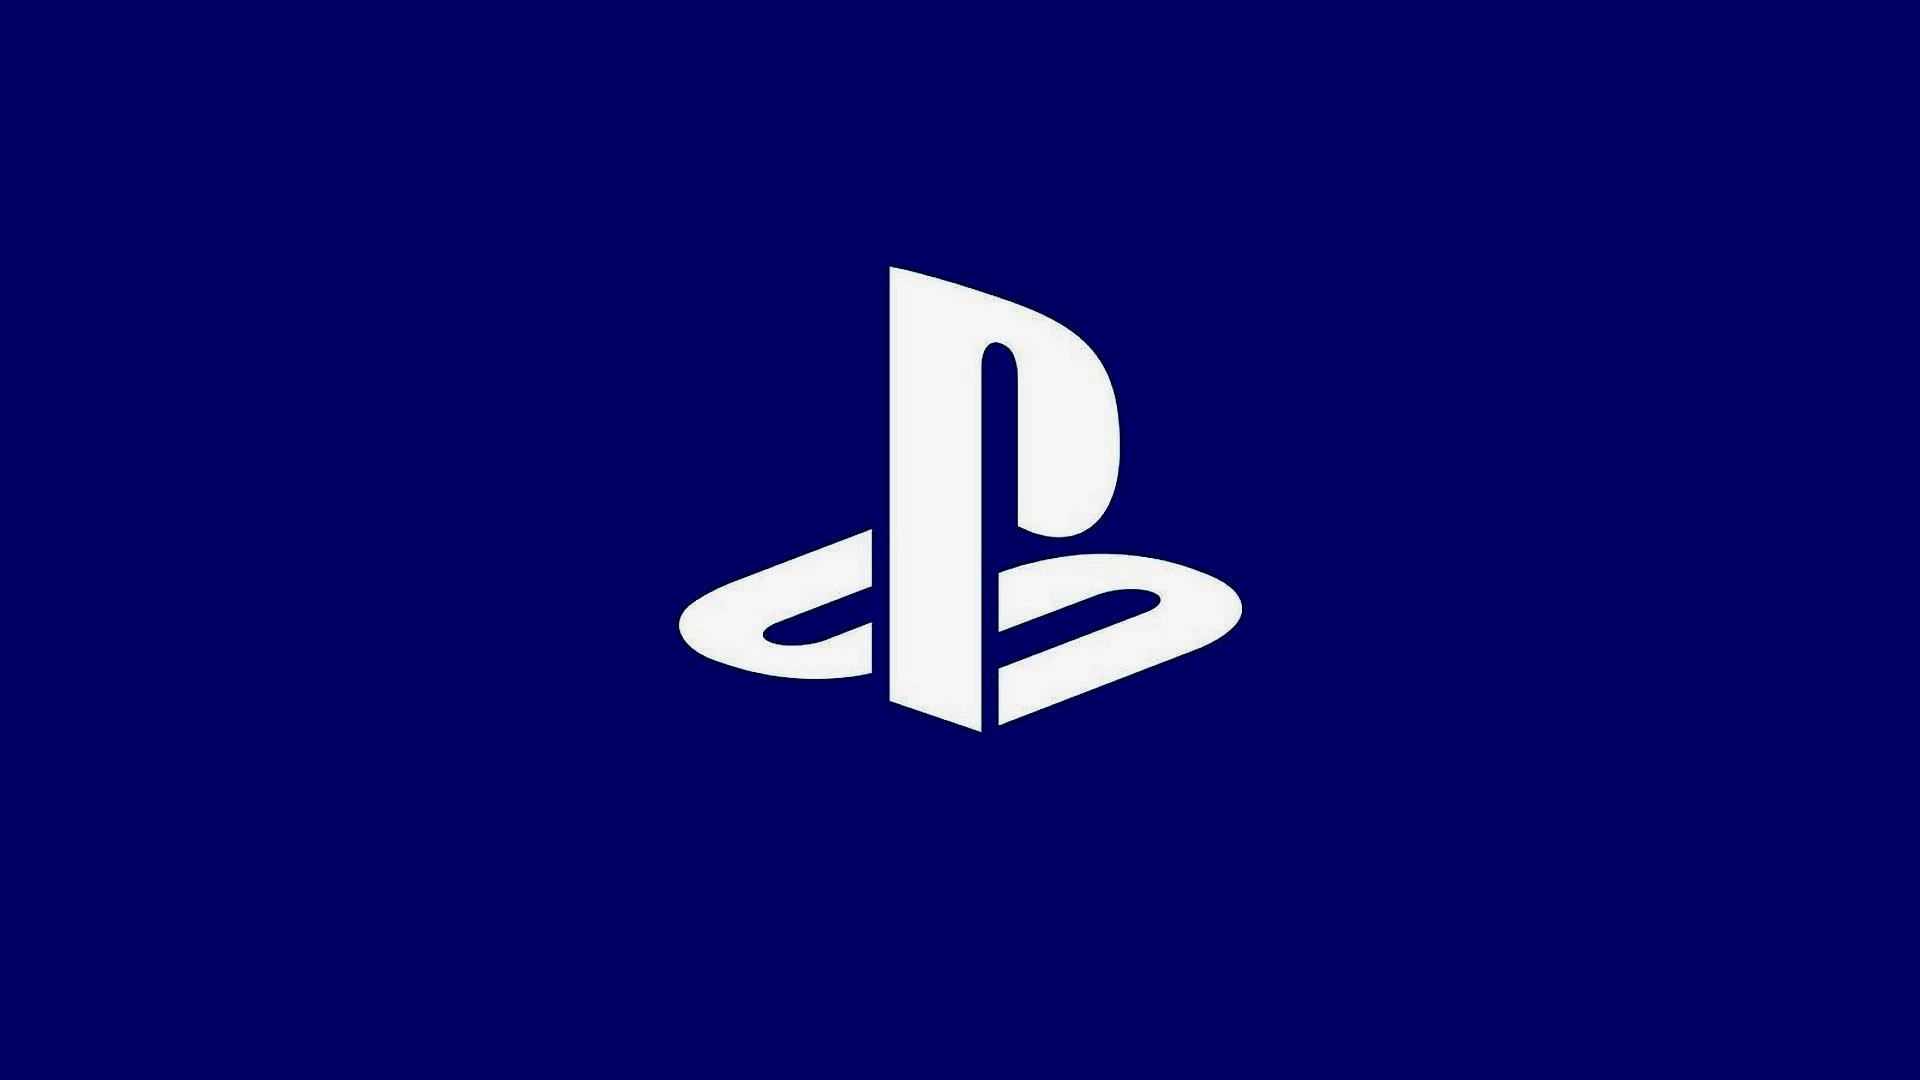 Logoya Playstation